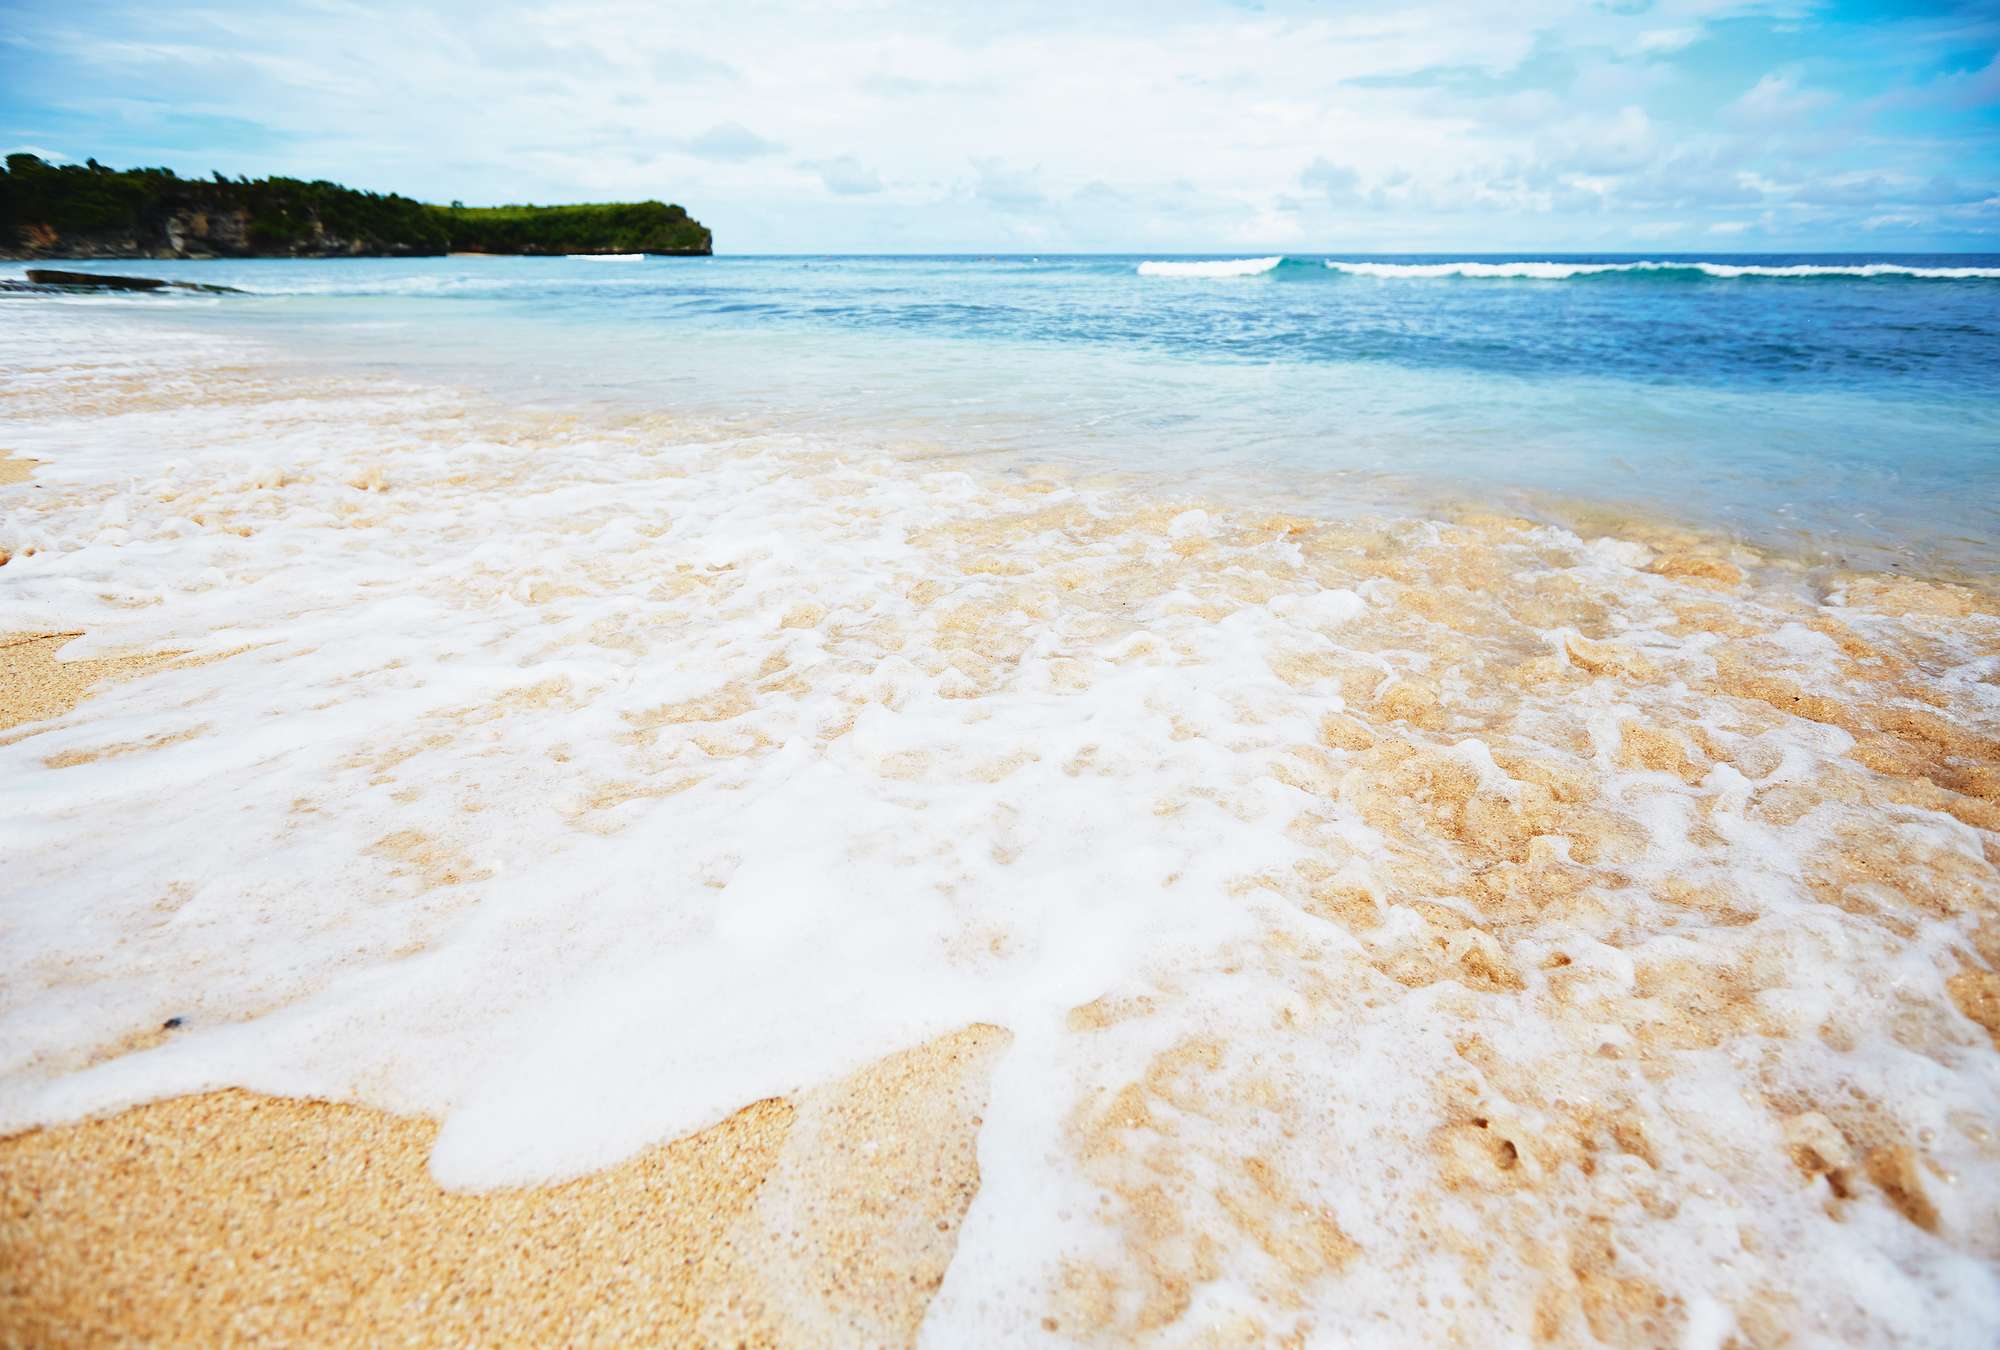             Fotomurali spiaggia di sabbia a Bali con onde spumeggianti
        